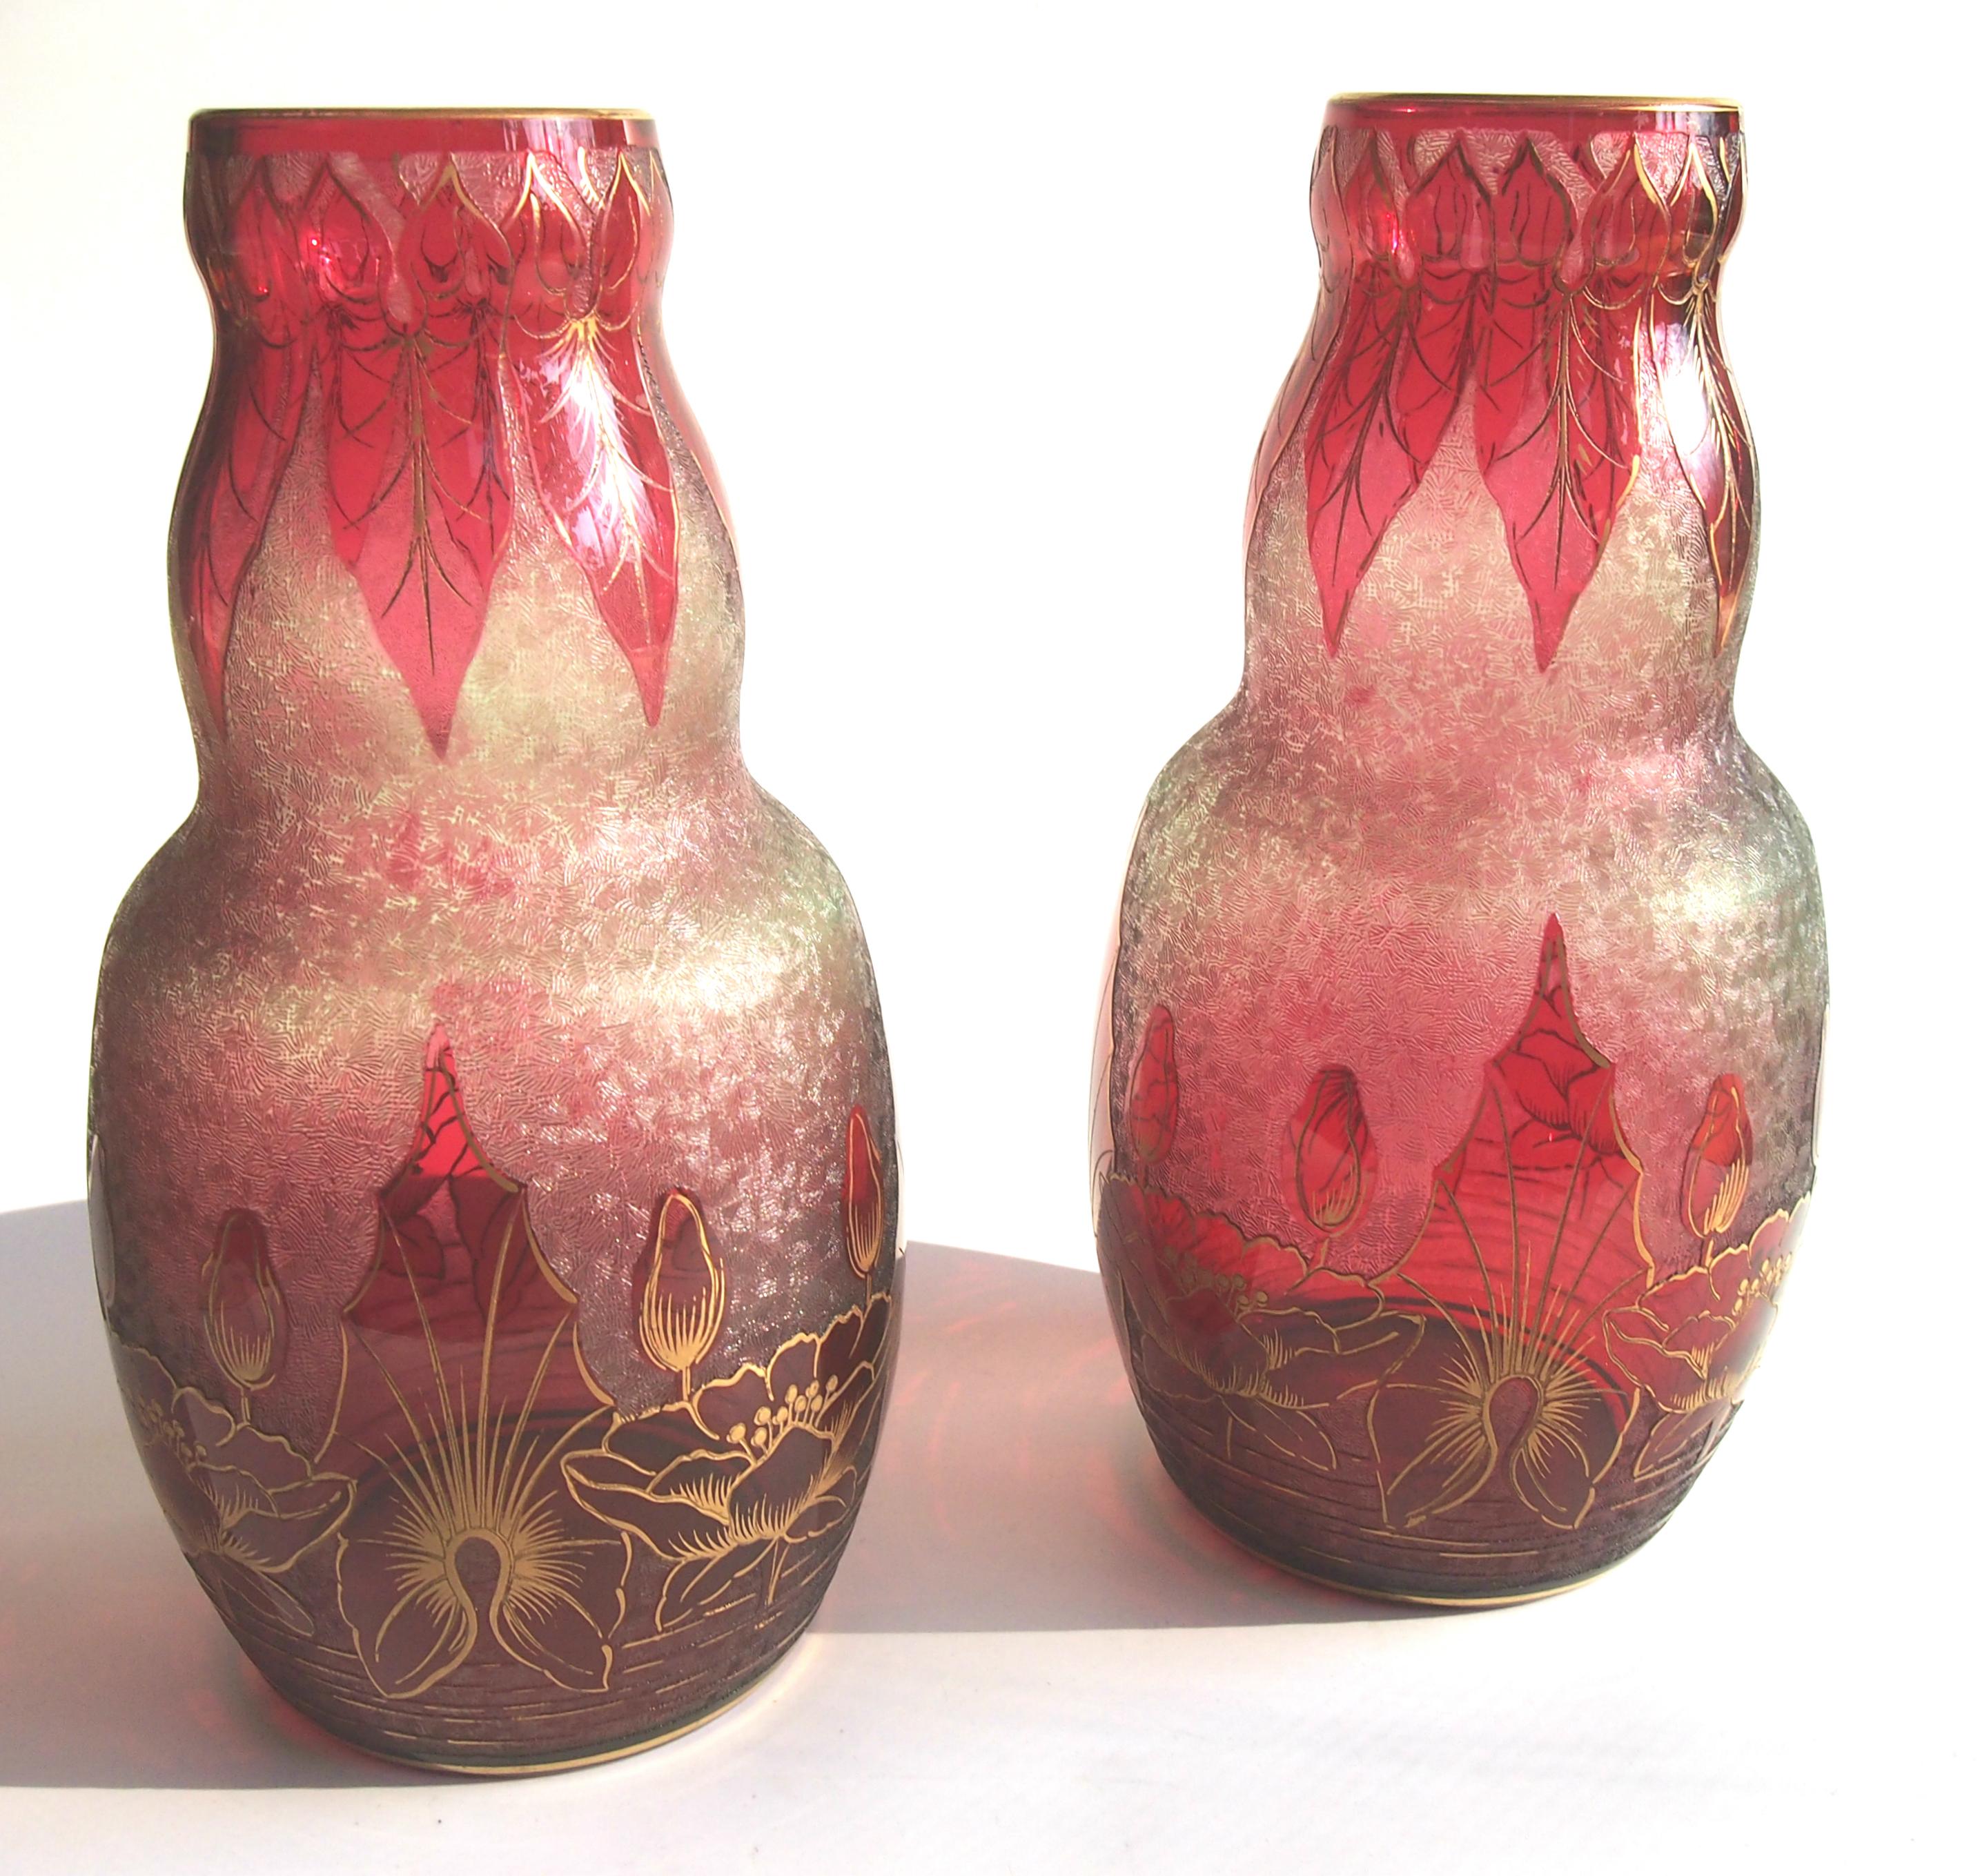 Importante paire de vases camées en cristal doré de Baccarat Art Nouveau, rouge profond sur vert pâle, représentant une scène aquatique stylisée avec des nénuphars. Comme pour la plupart des premiers camées de Baccarat, il existe un motif fin